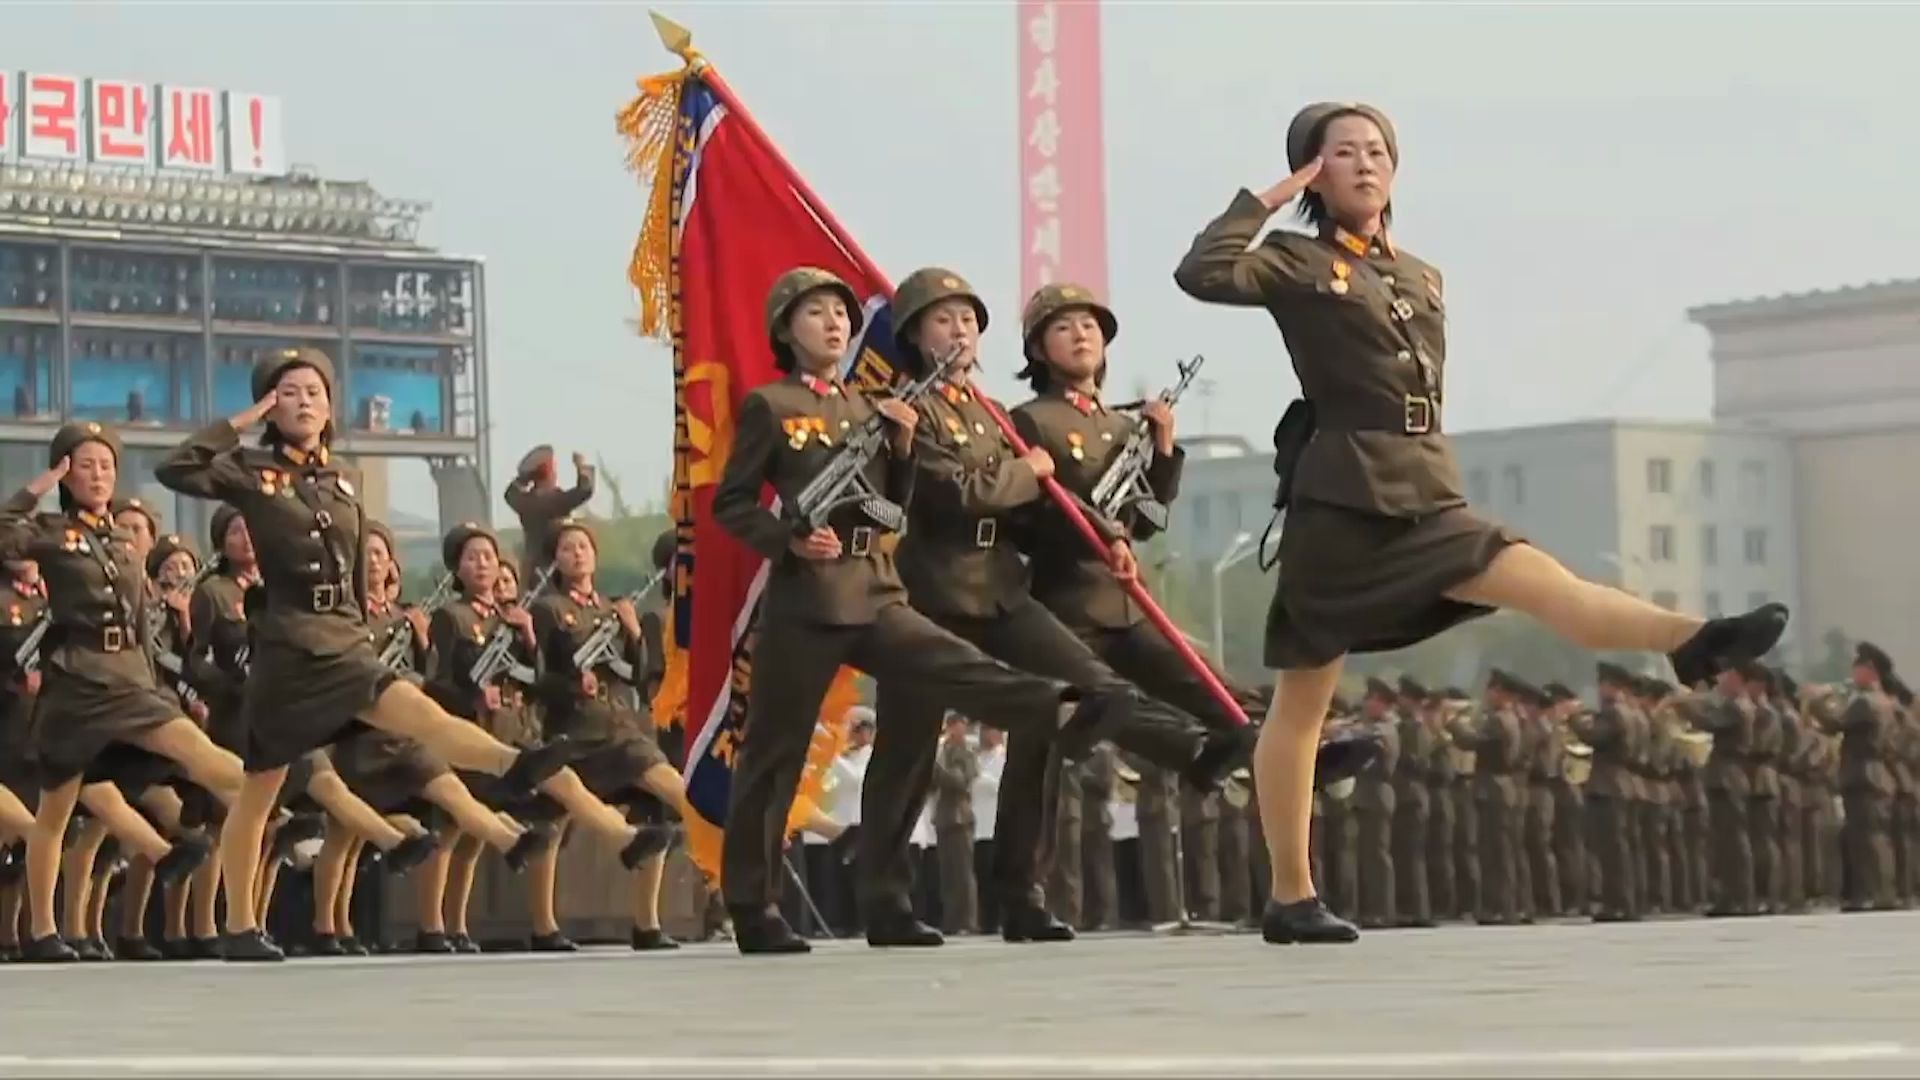 【速报】2018年9月9日朝鲜庆祝建国70周年庆祝活动序列 - 知乎